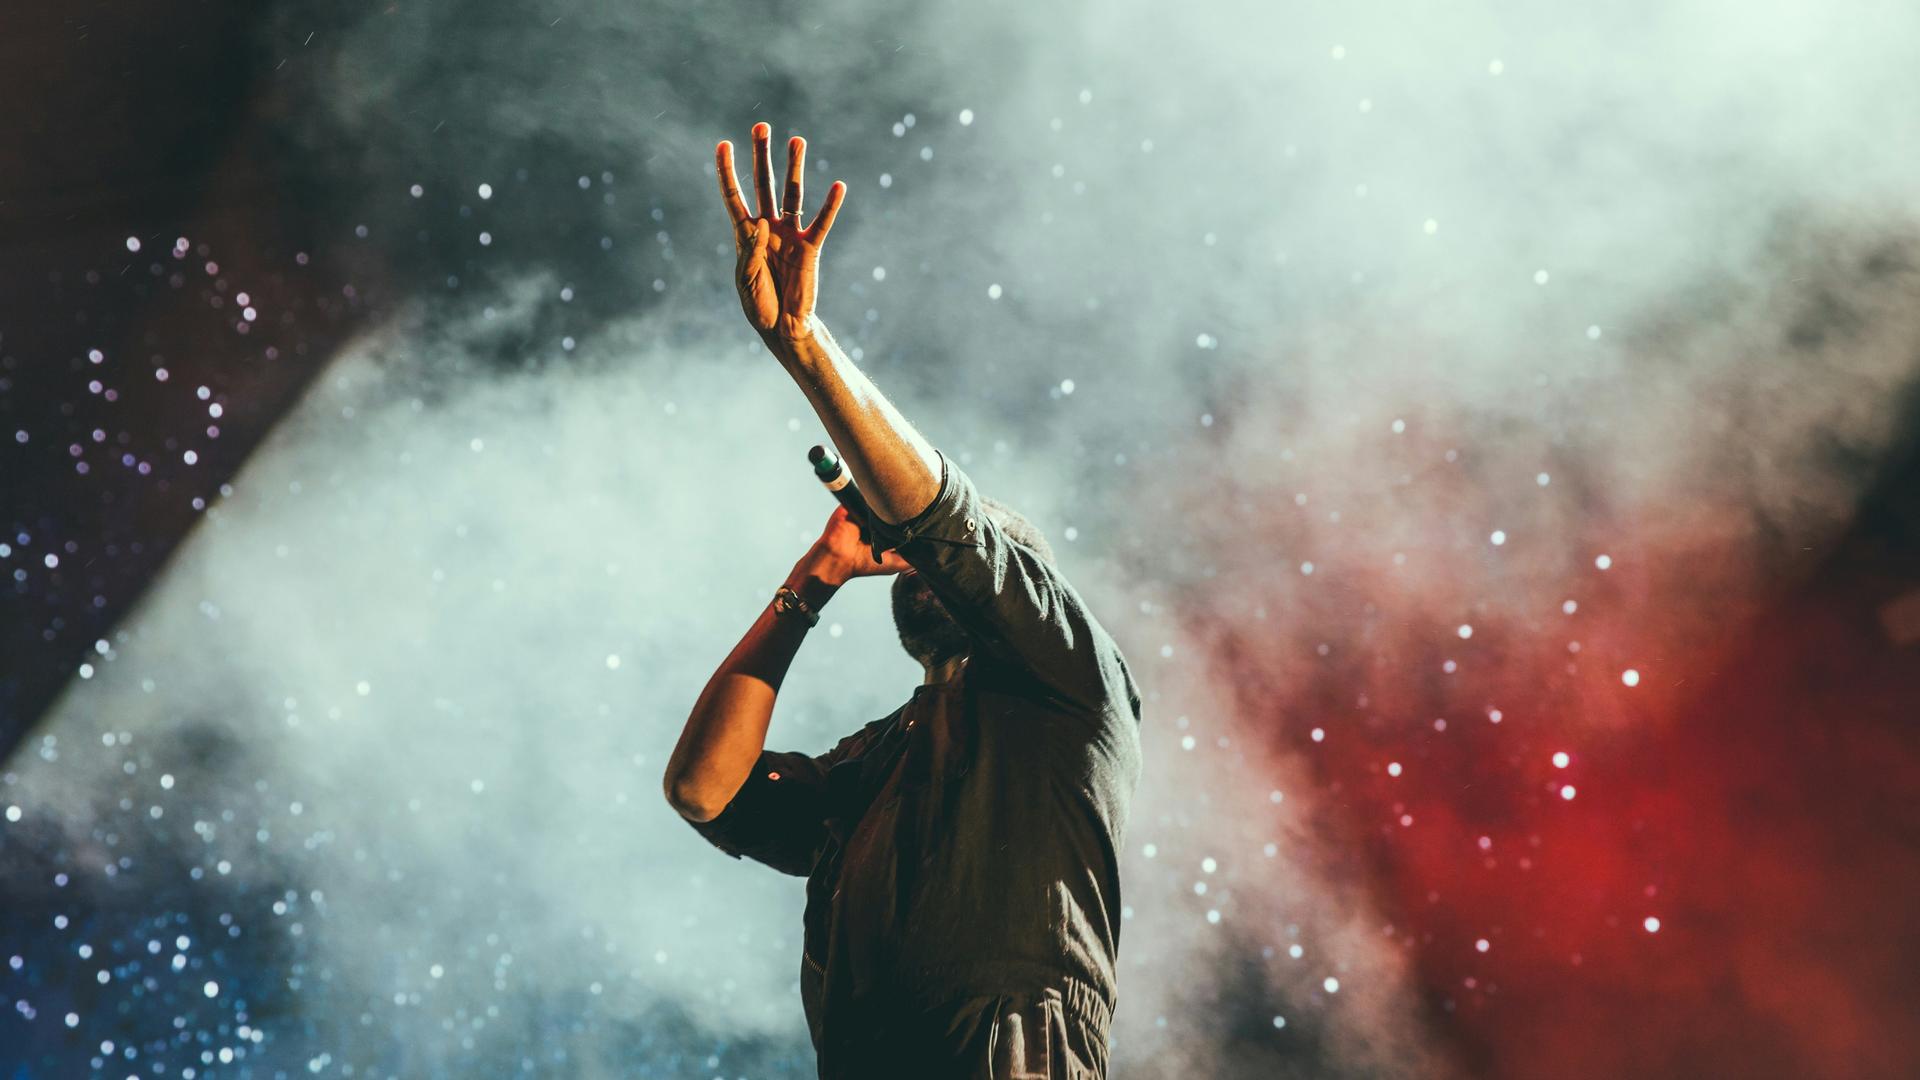 Ein Mann in einem Pullover steht auf der Bühne mit Mikrophon, sein Gesicht ist durch seinen gehobenen Arm verdeckt, während der Bühnenhintergrund weiß und rot mit Nebel ausgeleuchtet ist.